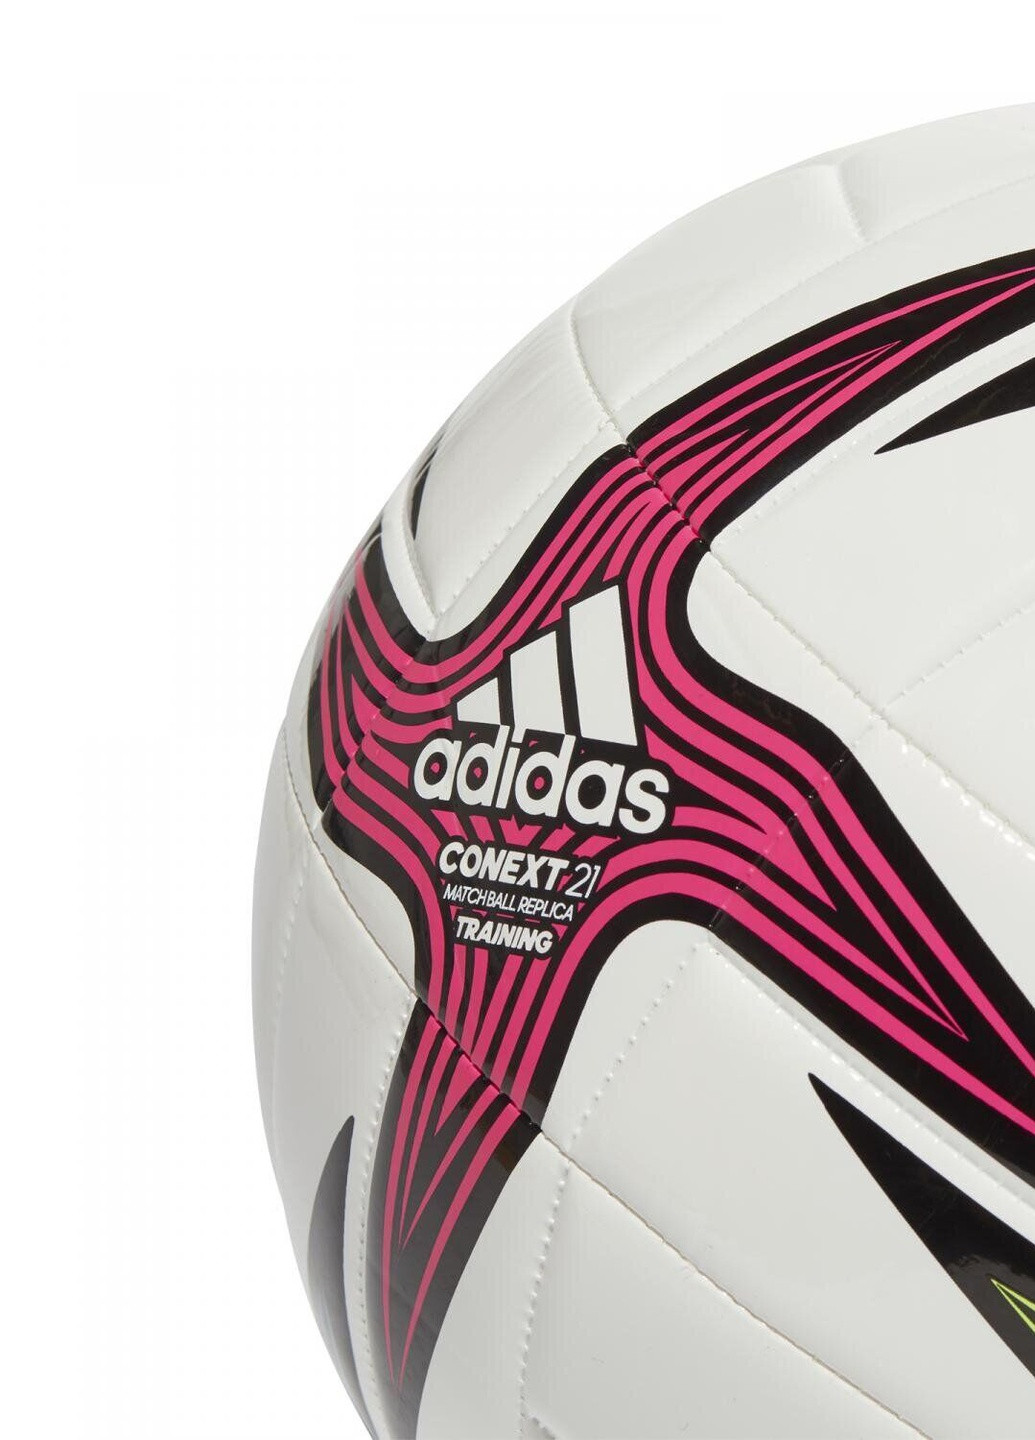 Футбольный мяч Conext 21 Training GK3491 adidas (257410898)